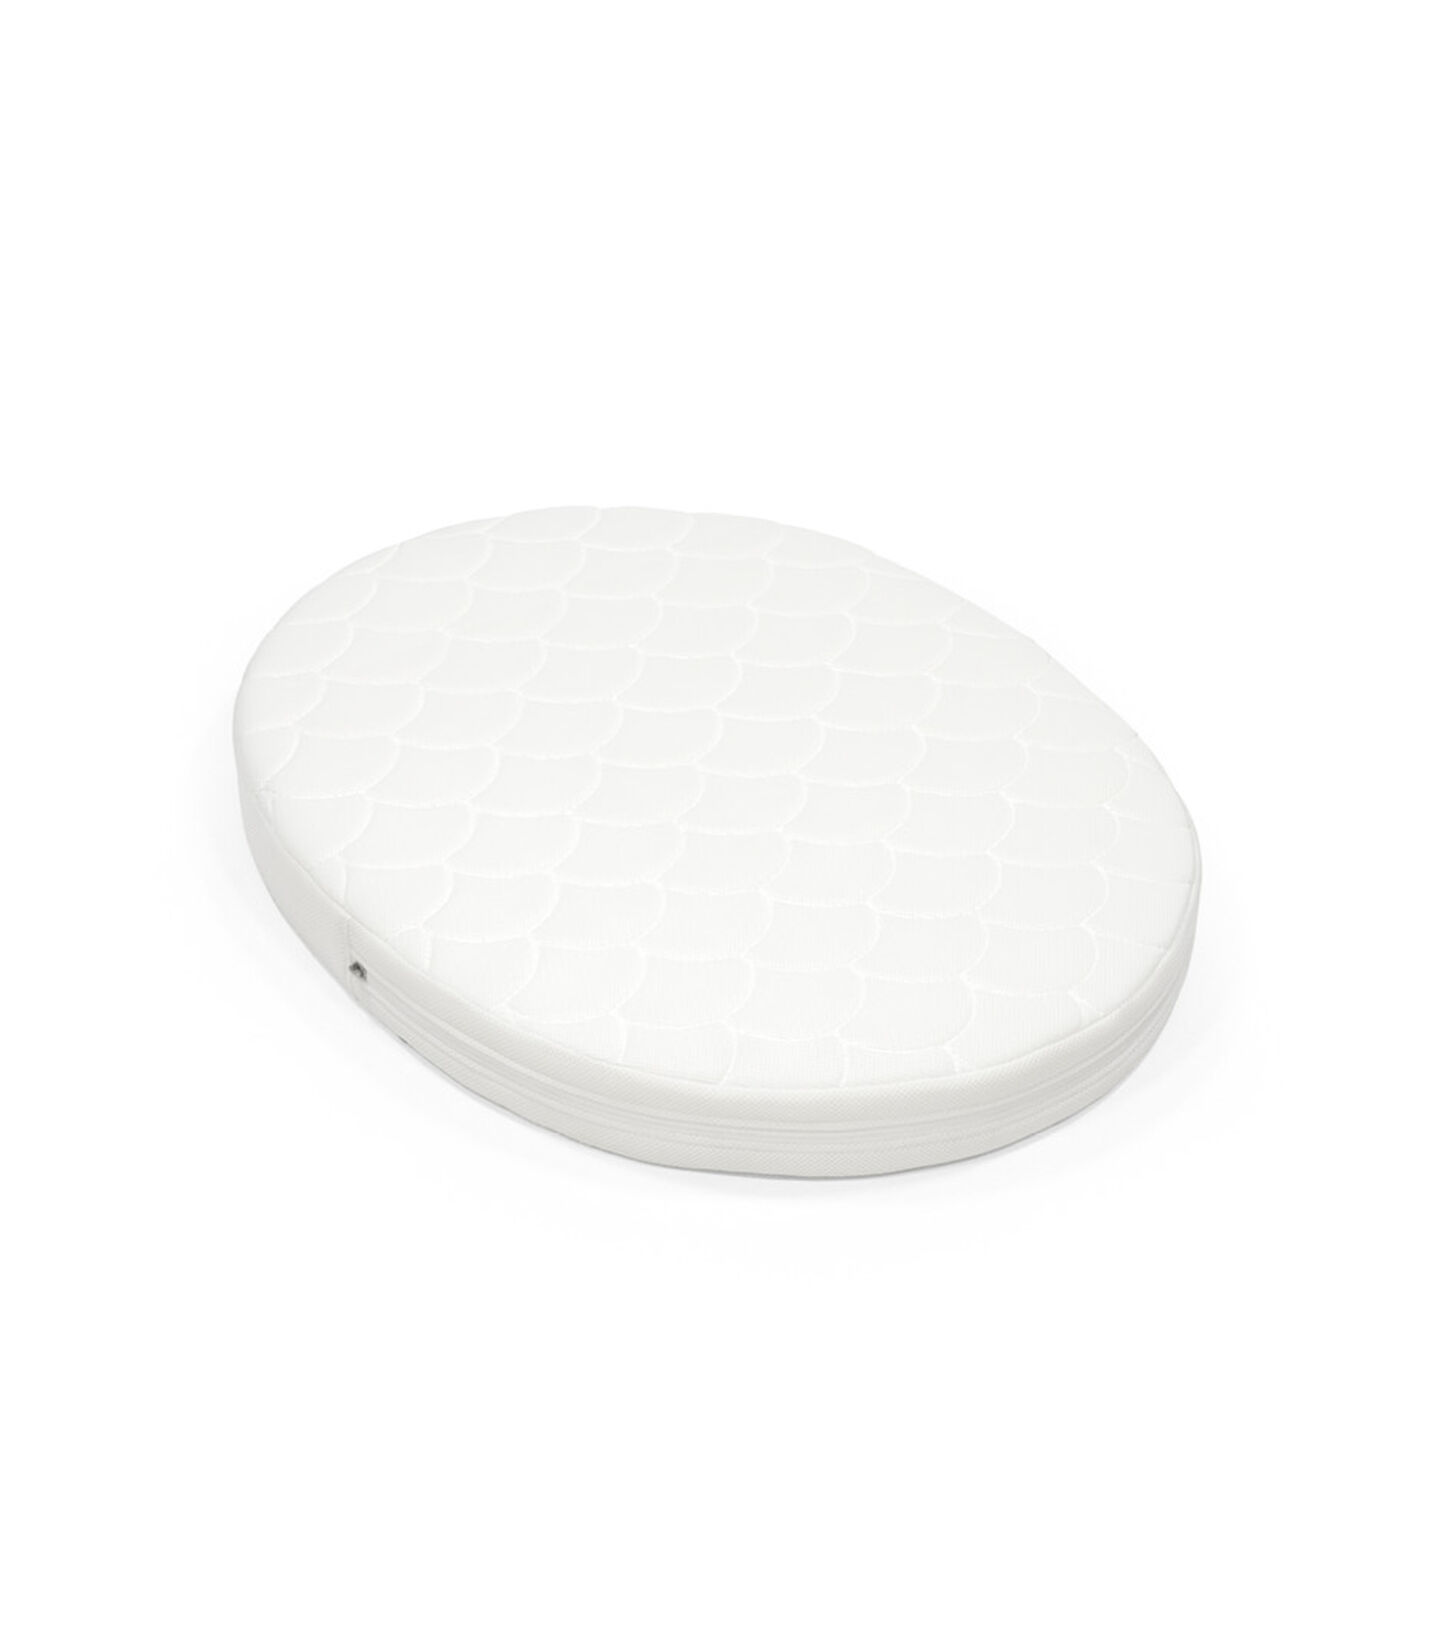 Colchón de la Cama Stokke® Sleepi™ Mini Blanco, Blanco, mainview view 1